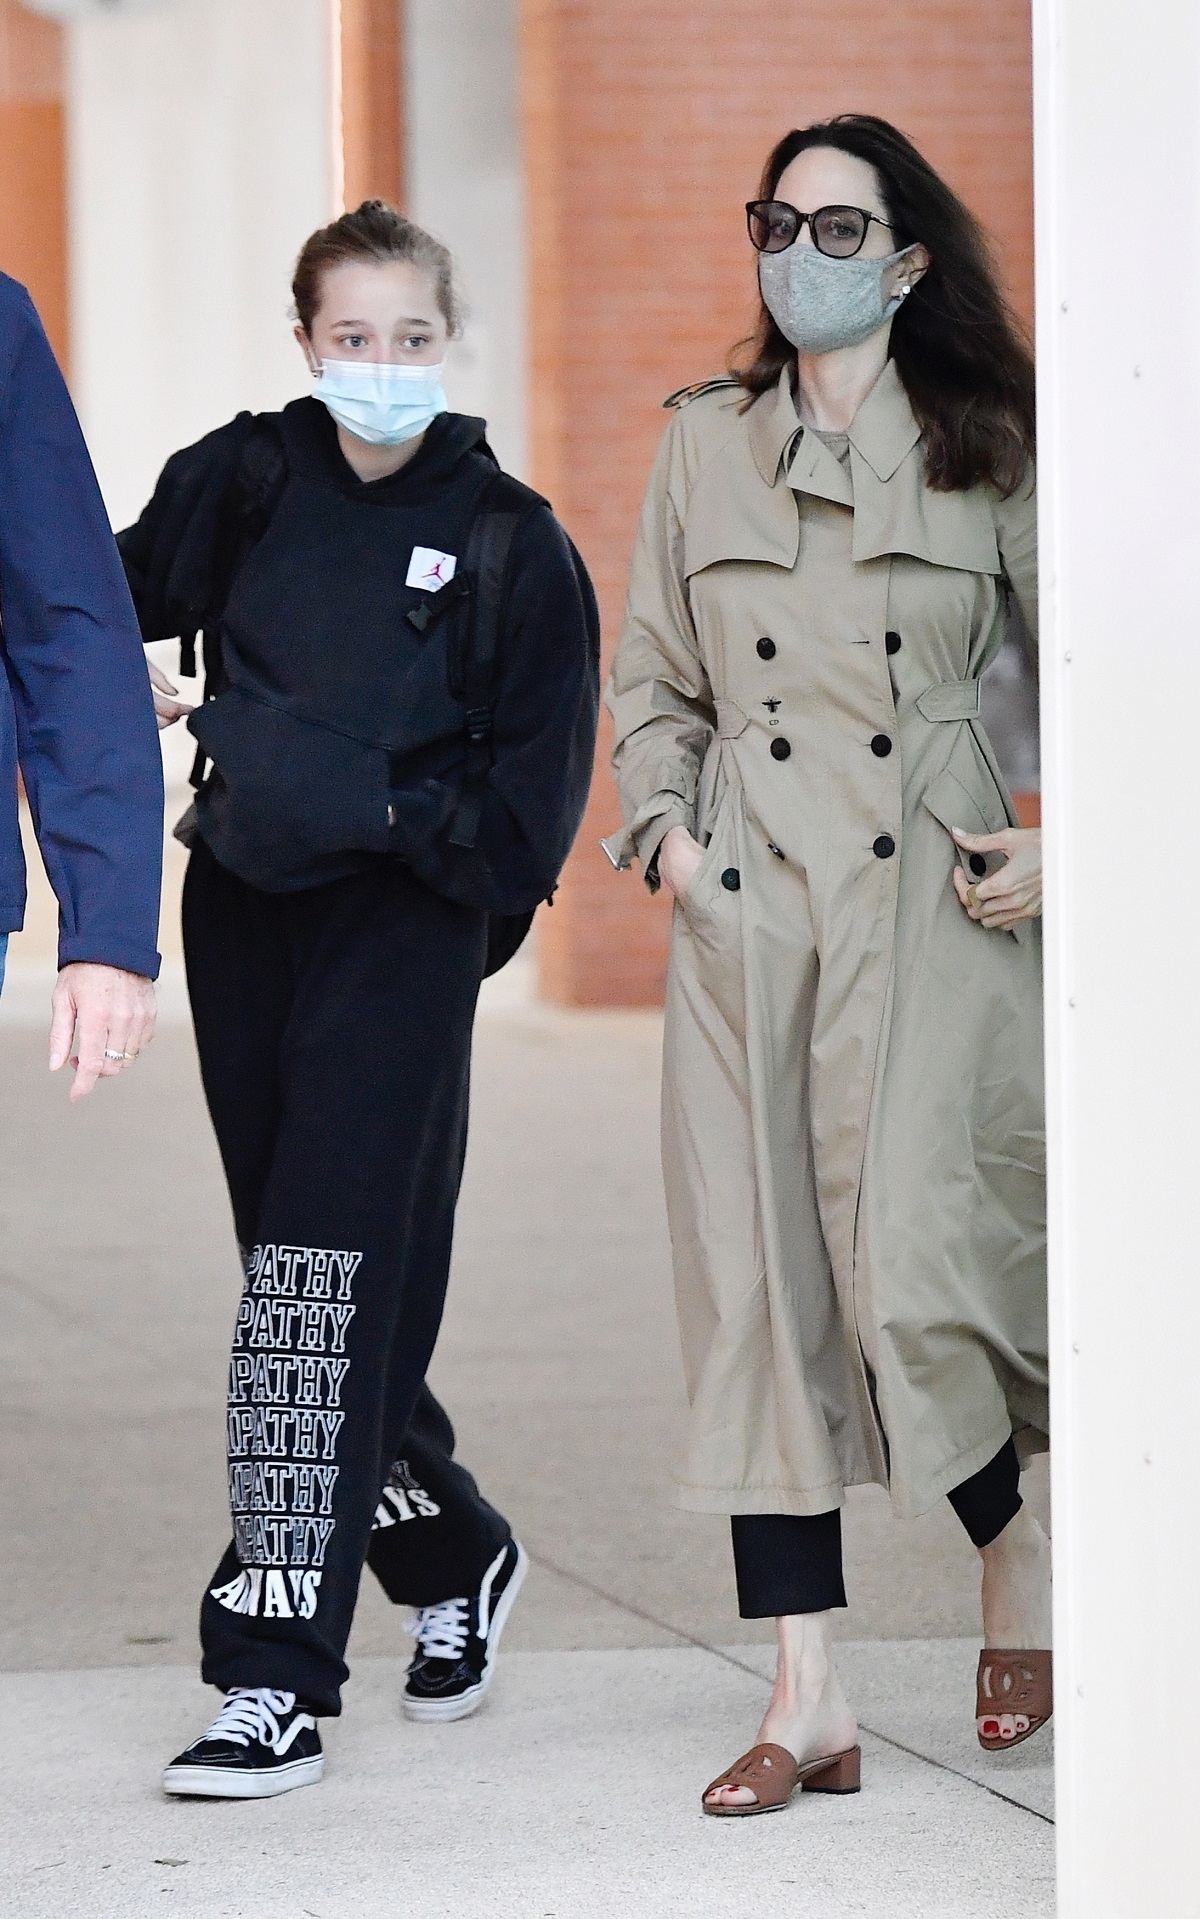 Shiloh Jolie-Pitt îmbrăcată casual în hanorac negru și pantaloni de aceeași culoare, alături de mama sa, Angelina Jolie care poartă un trench crem în timp ce sosesc pe aeroportul din Veneția